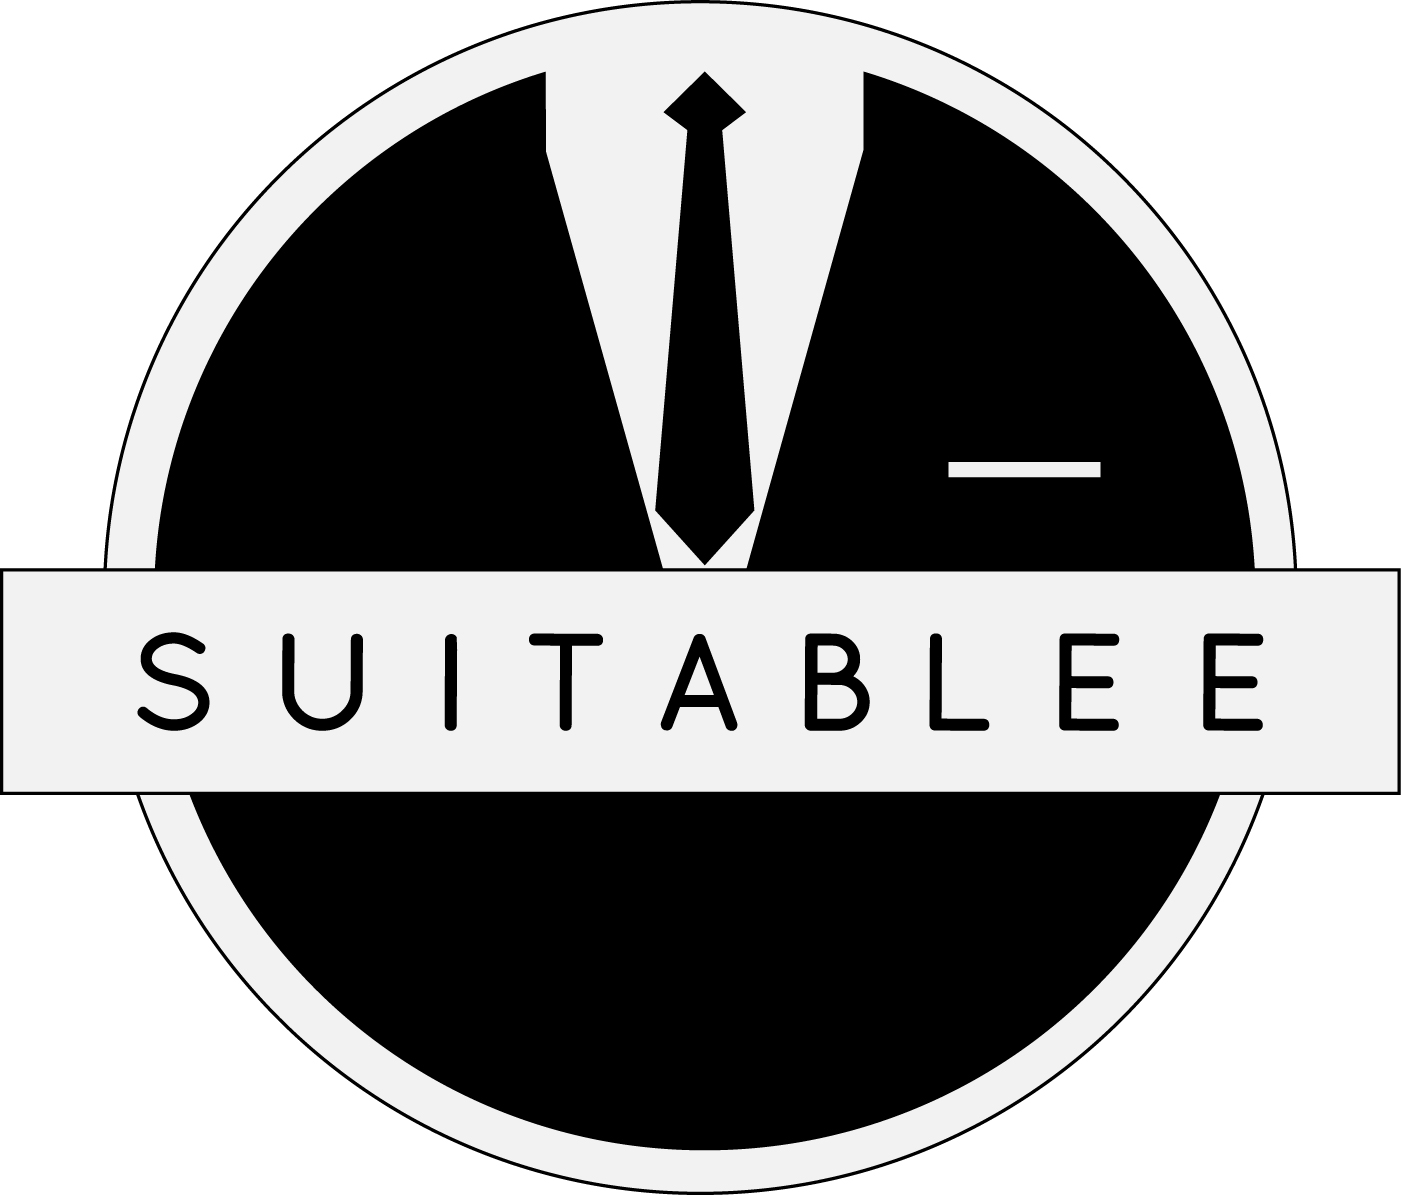 Suitablee logo